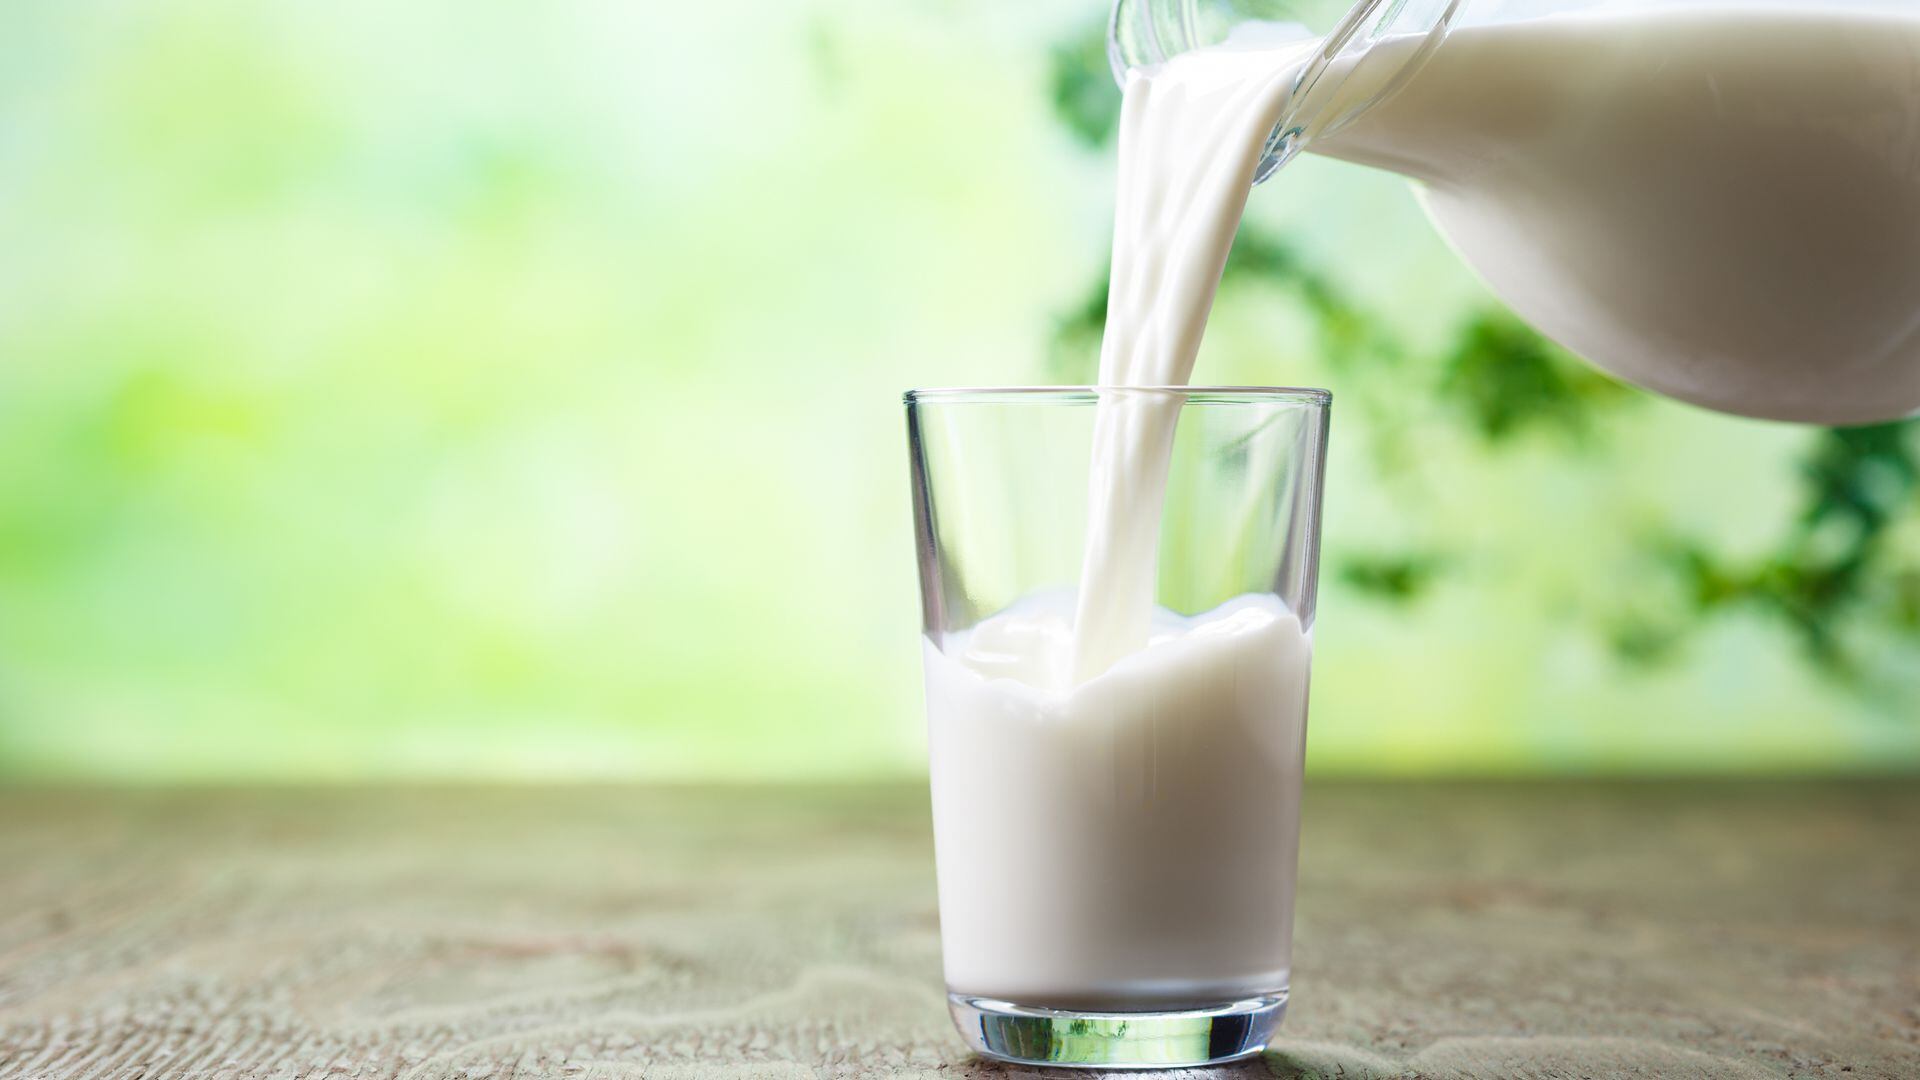 La Ley garantiza el acceso a leches medicamentosas durante el período que el especialista considere necesario
(iStock)